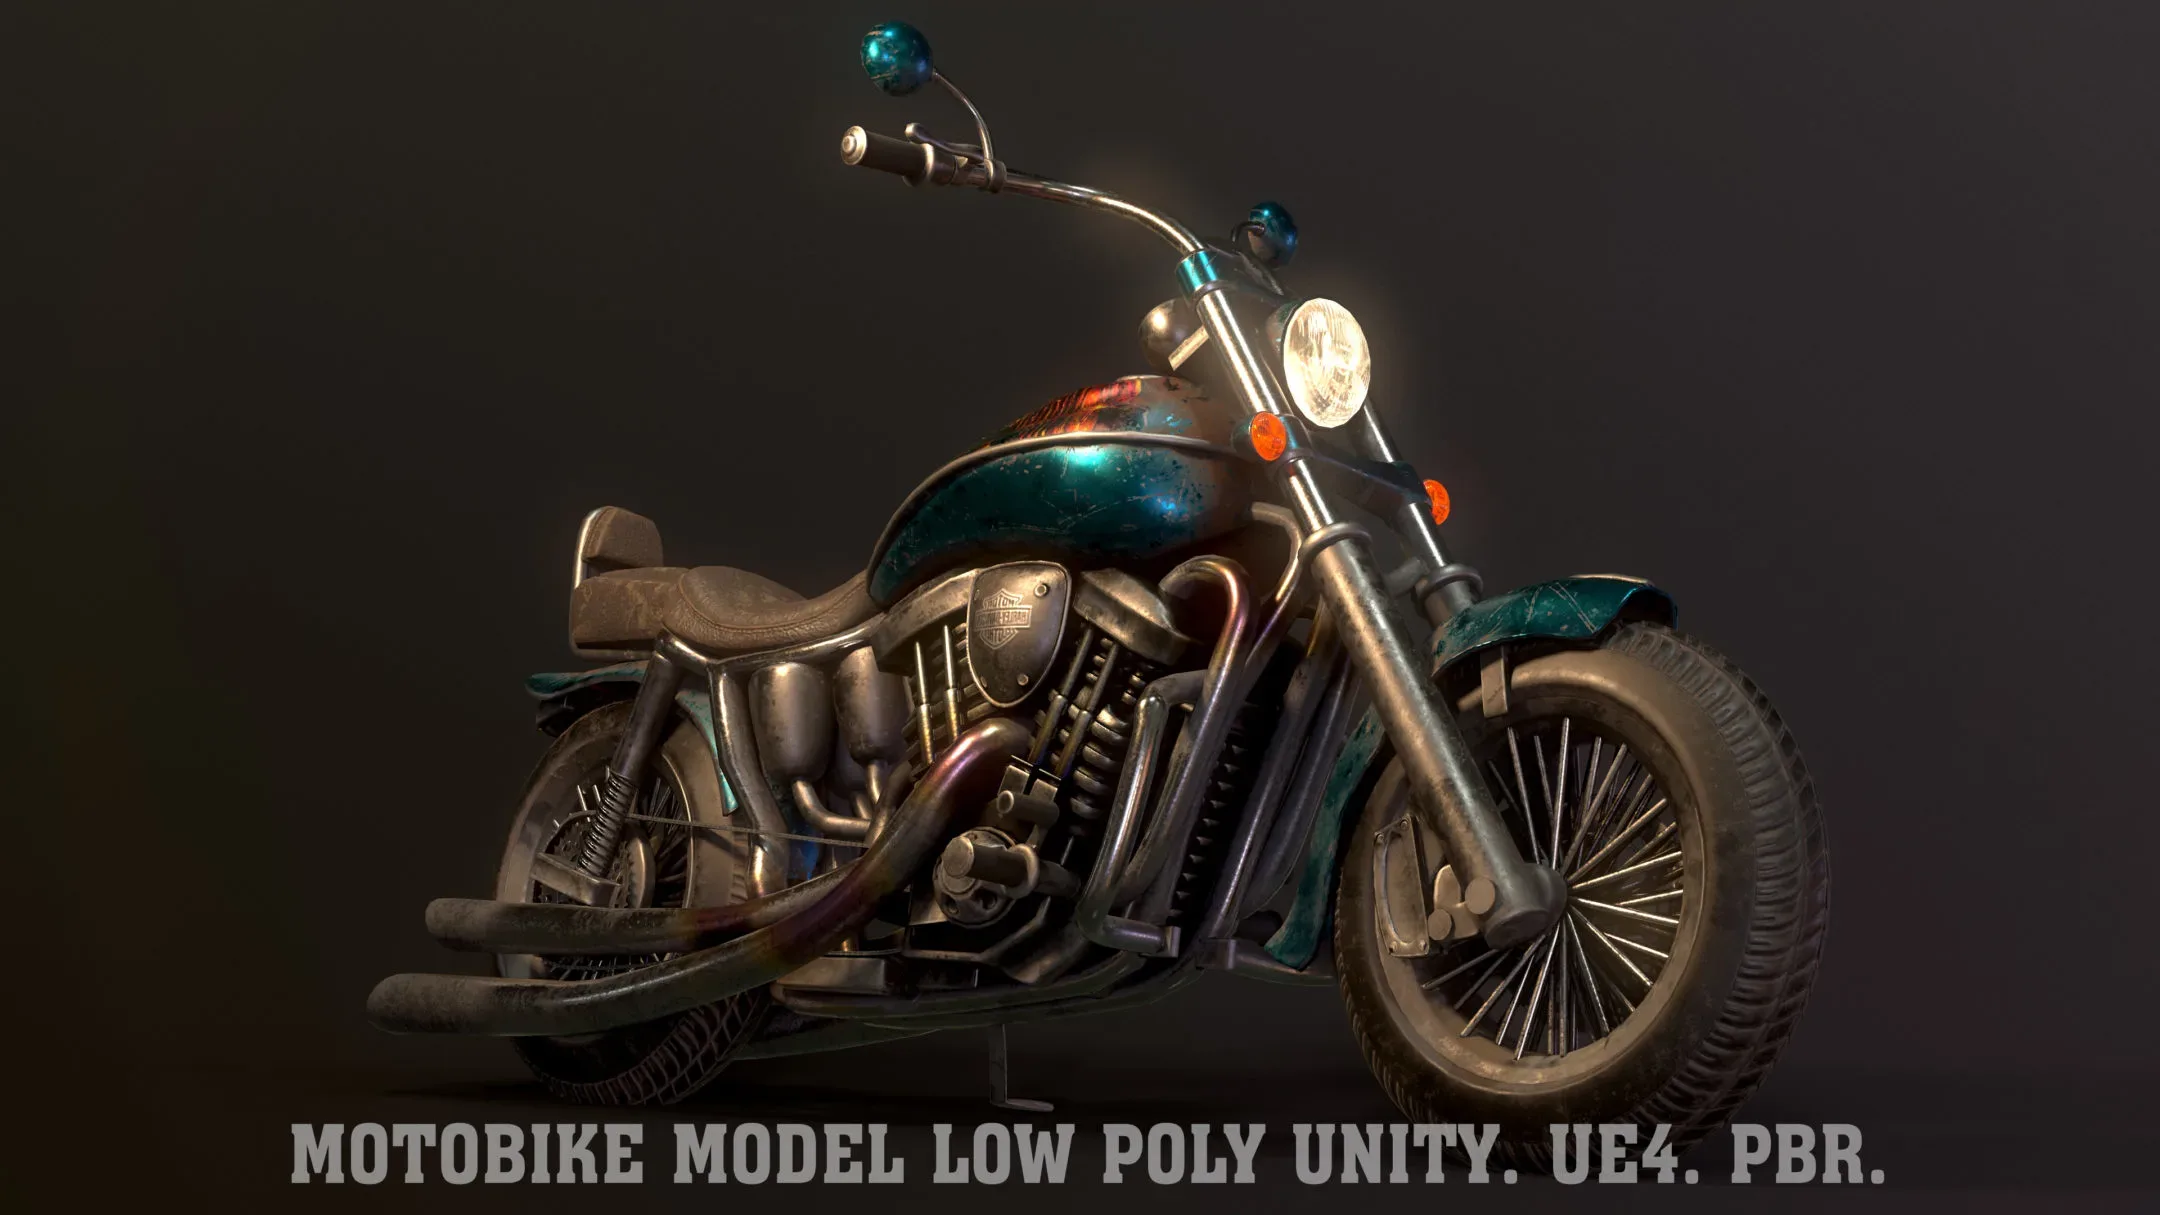 Motobike Model Low Poly Unity. Ue4. PBR.